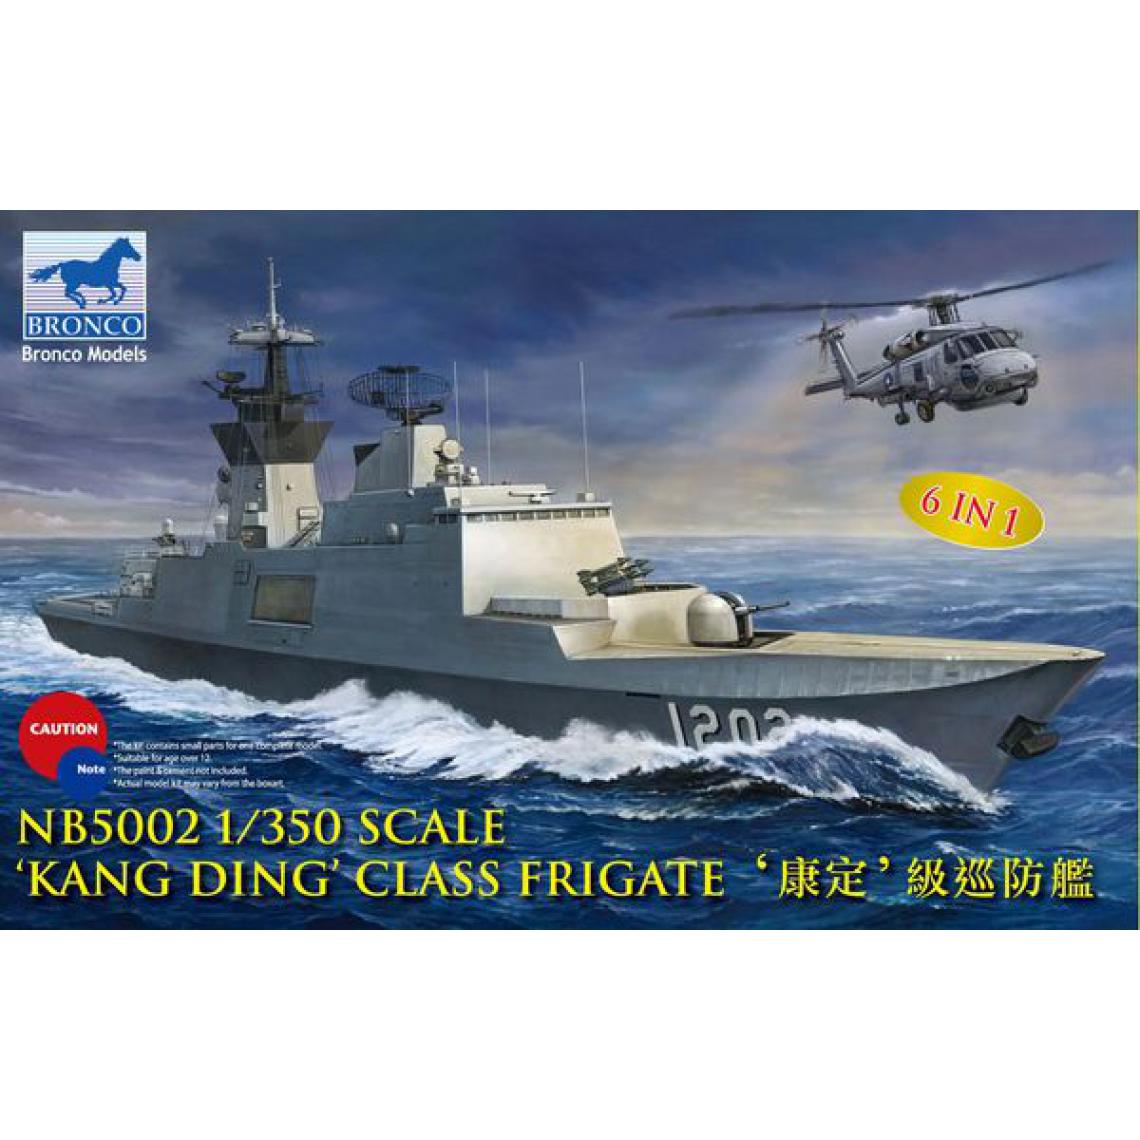 Bronco Models - Kang Ding" class Frigate - 1:350e - Bronco Models - Accessoires et pièces